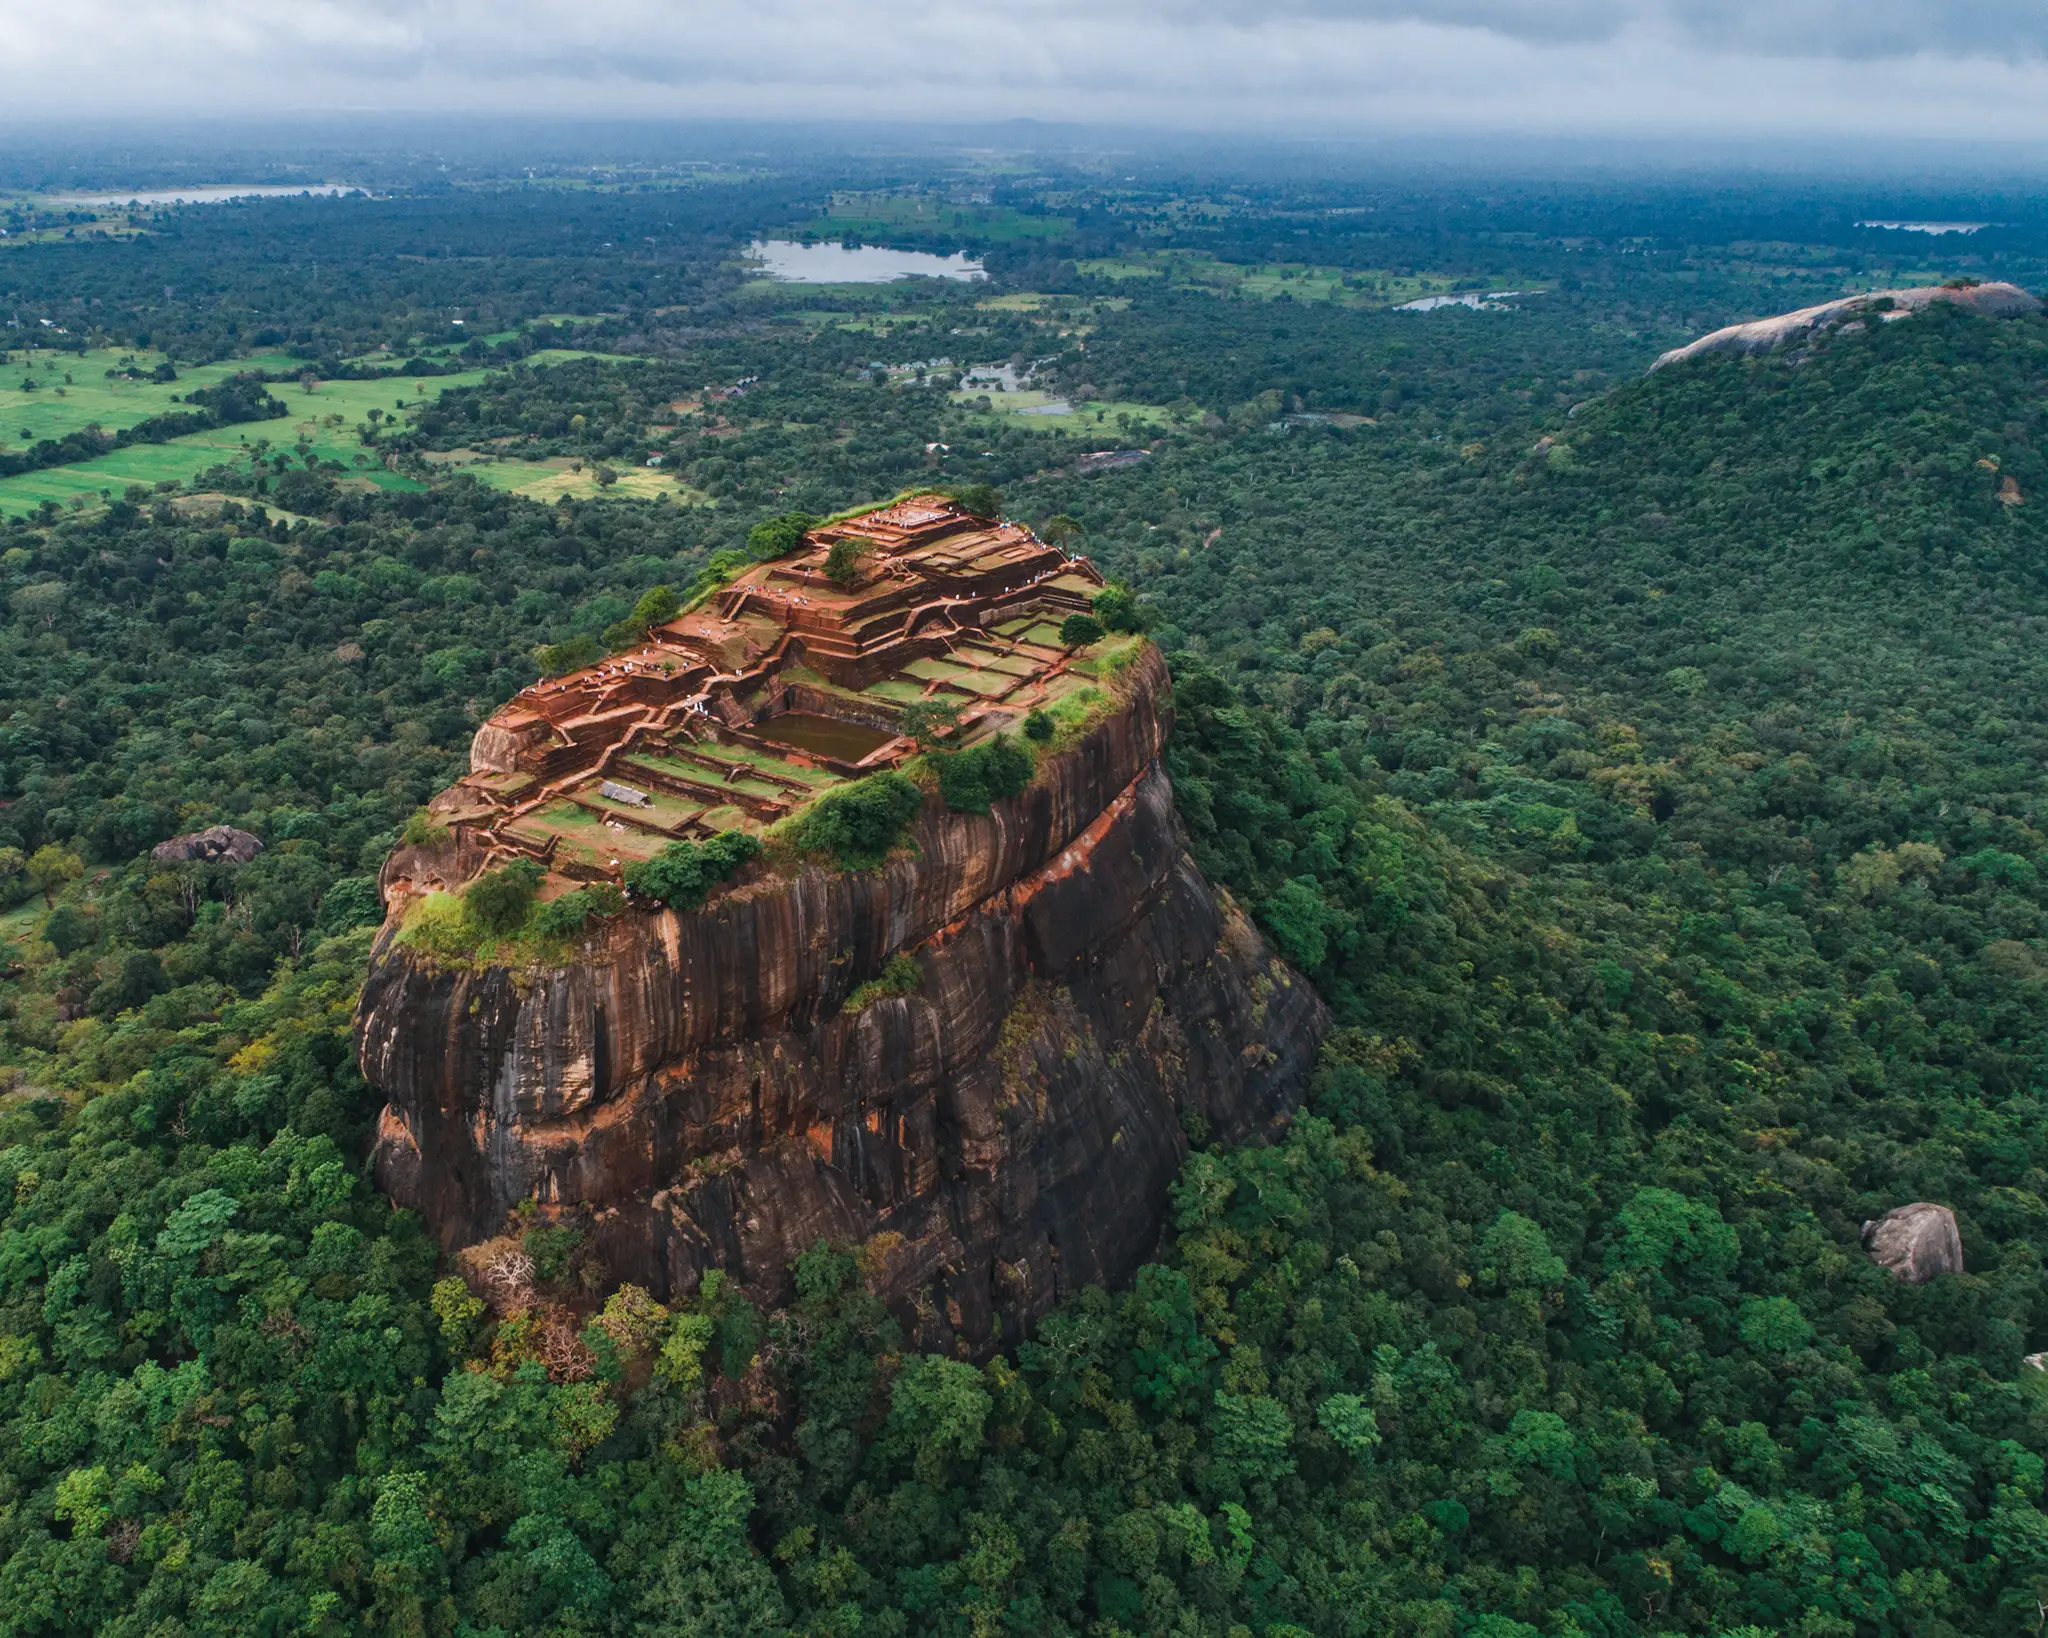 The historical Sigiriya lion rock fortress in Sri Lanka.